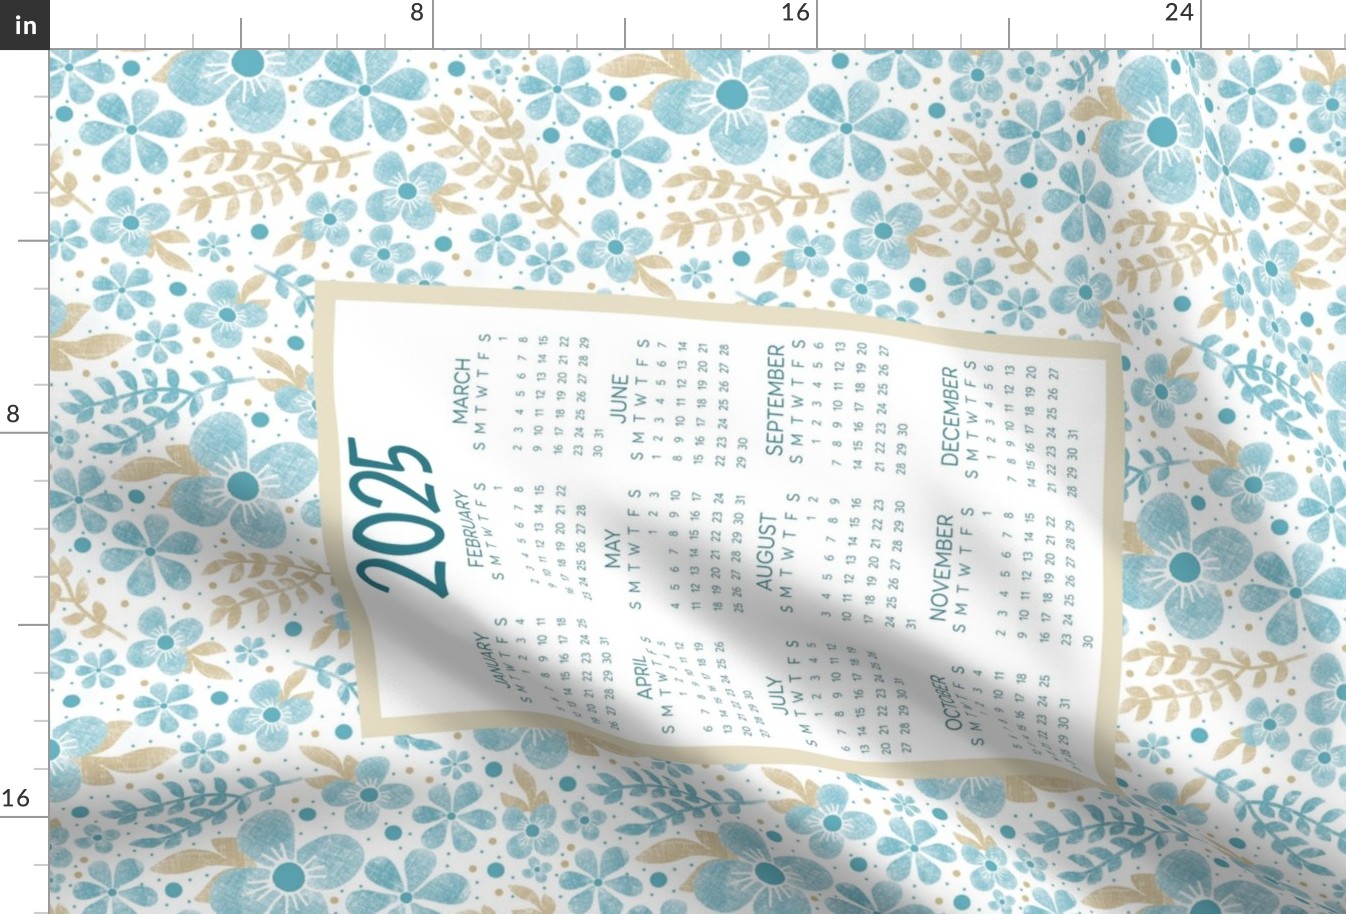 2025 Calendar Wall Hanging Fat Quarter Tea Towel Size Soft Aqua and Tan Floral